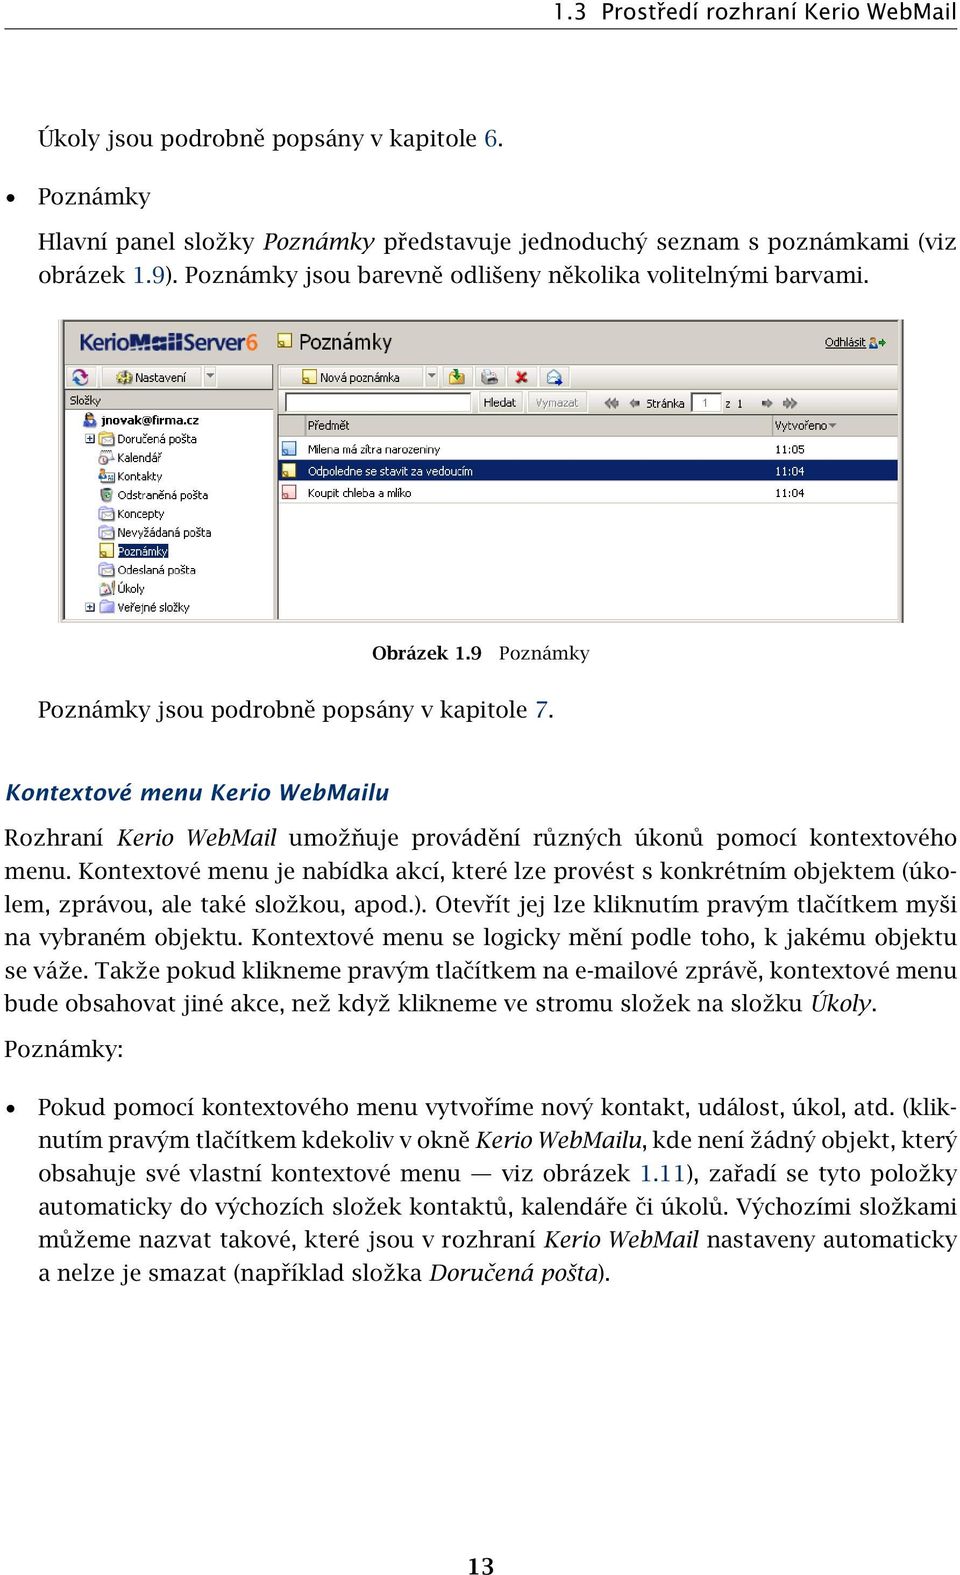 Kontextové menu Kerio WebMailu Rozhraní Kerio WebMail umožňuje provádění různých úkonů pomocí kontextového menu.